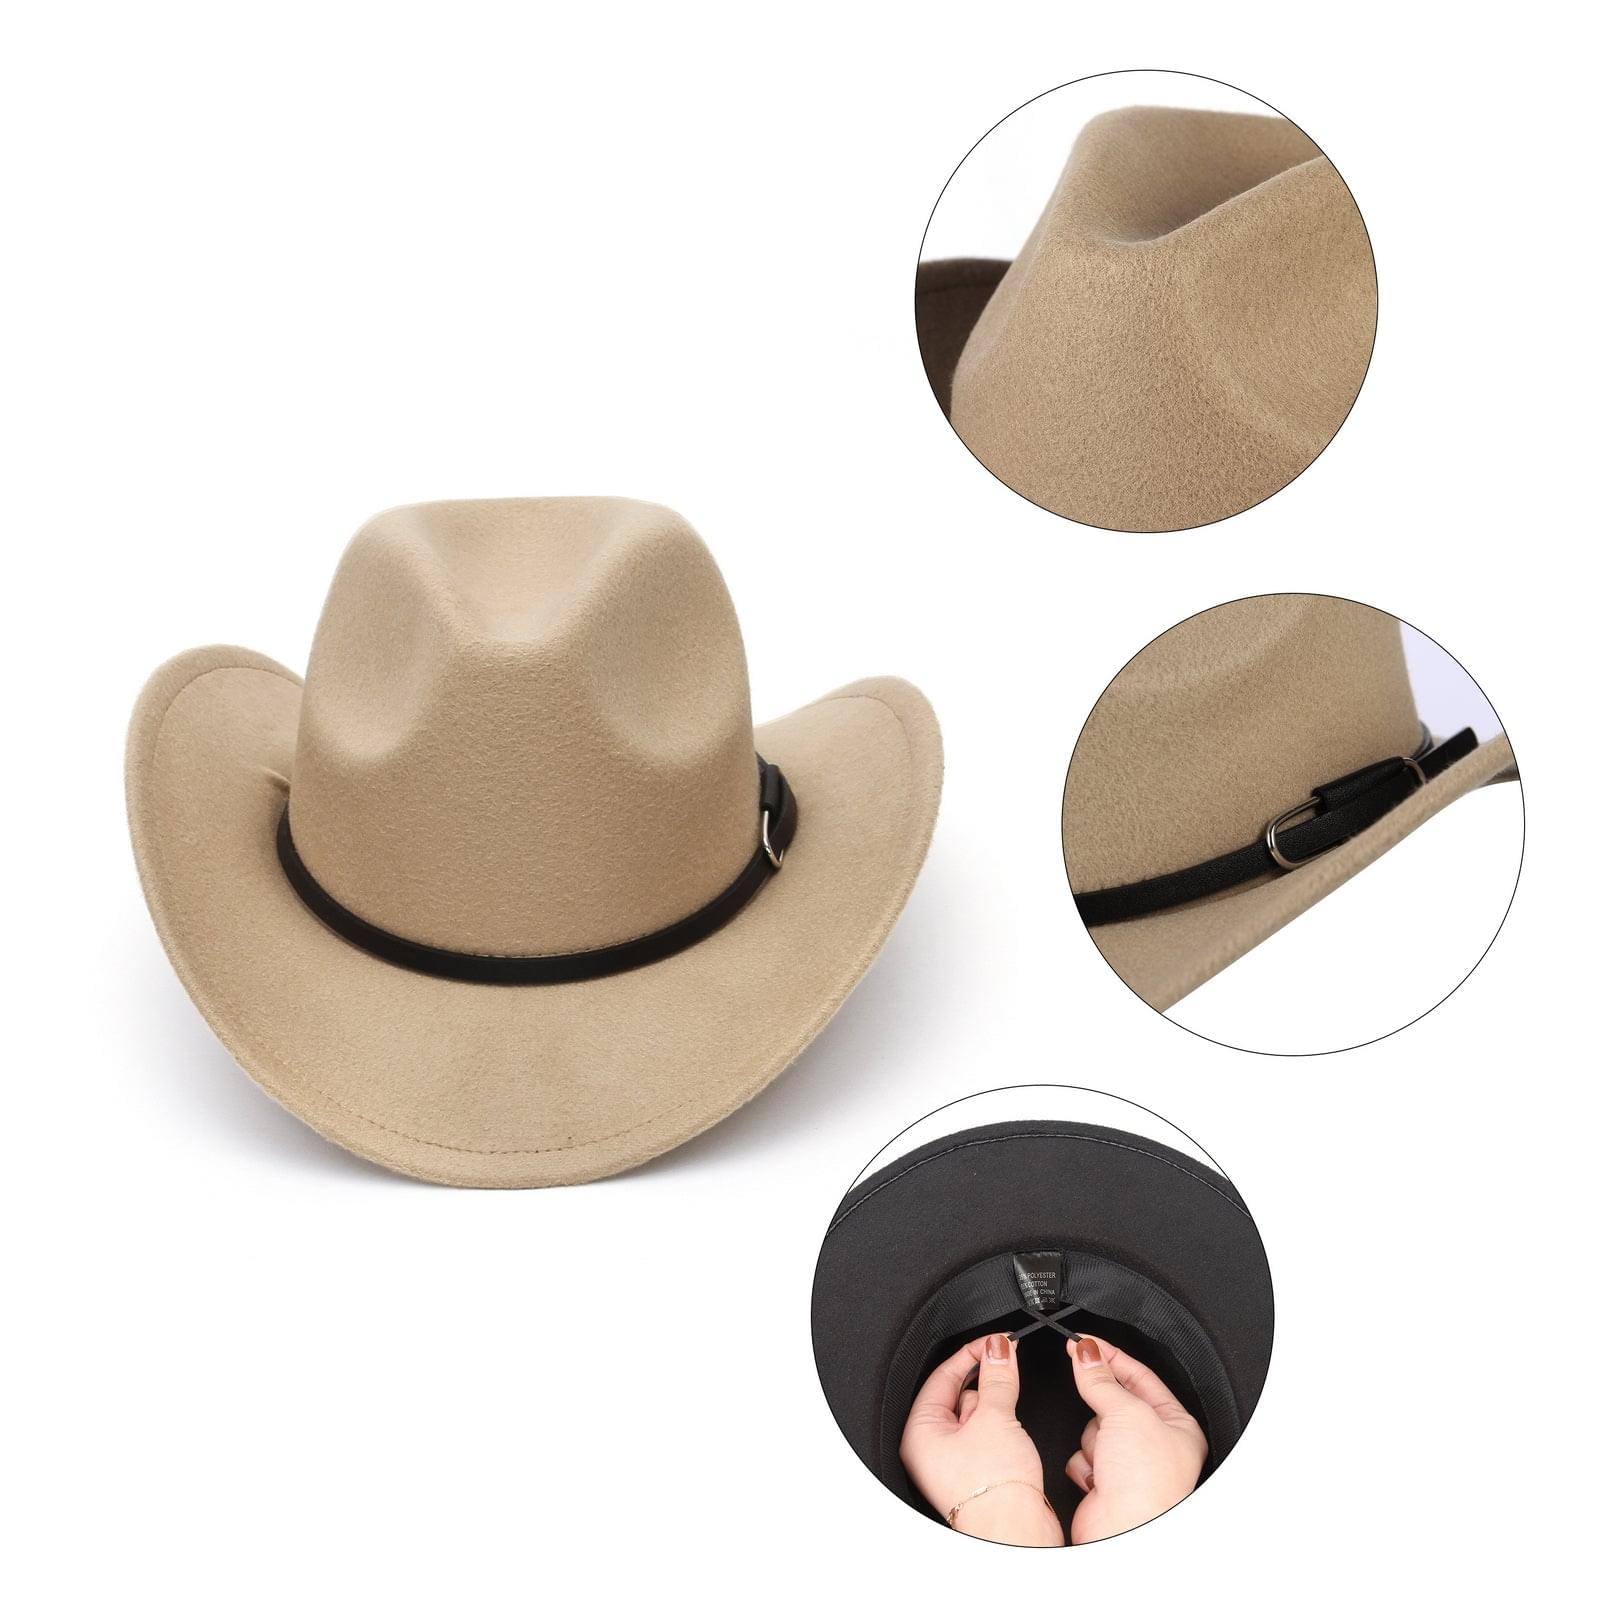 GEMVIE Cowboy Cowgirl for Women Mens Floppy Sun Hat Fedora Straw